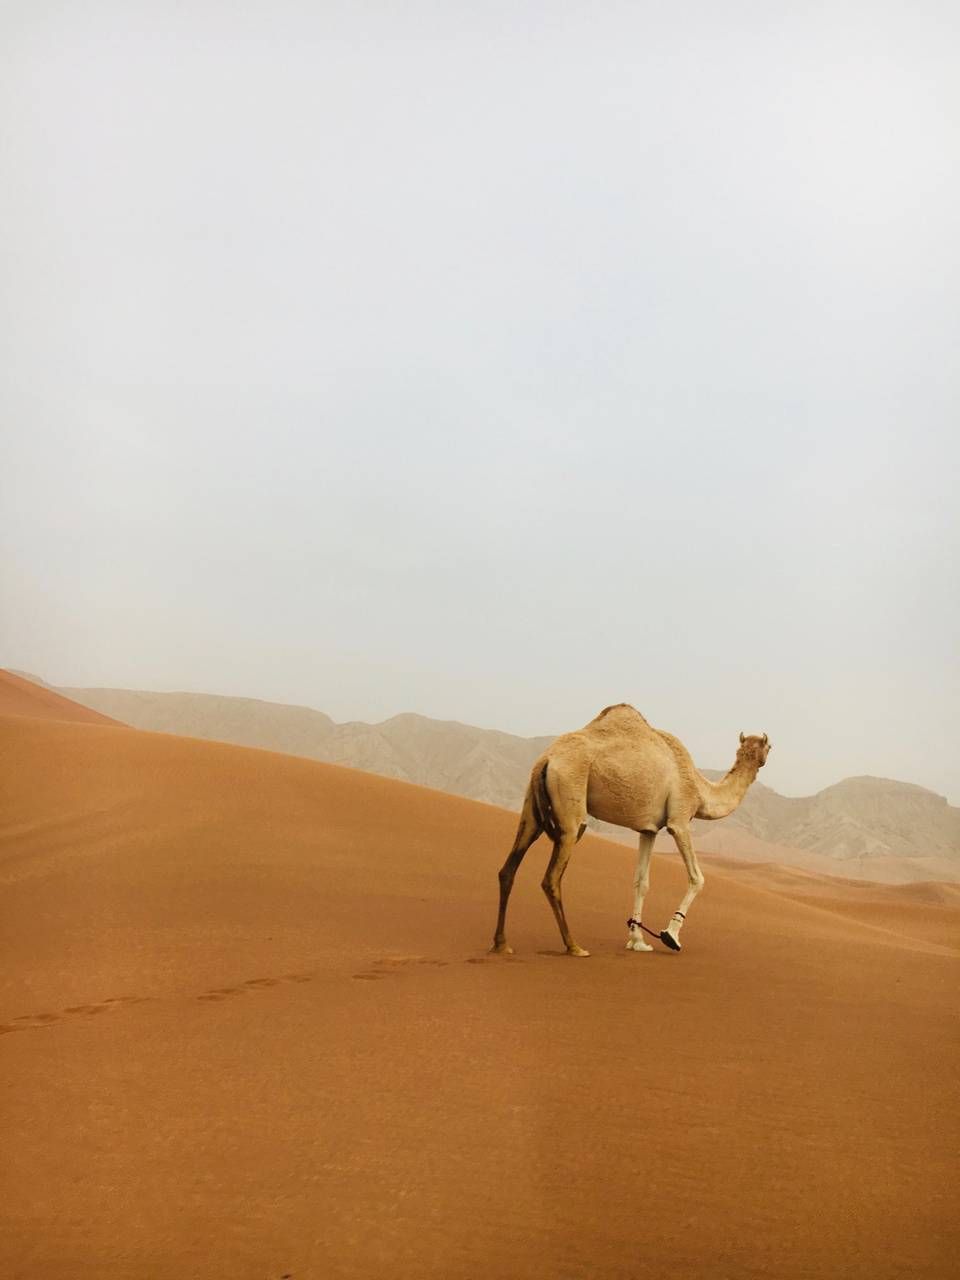 Desert Camel wallpaper